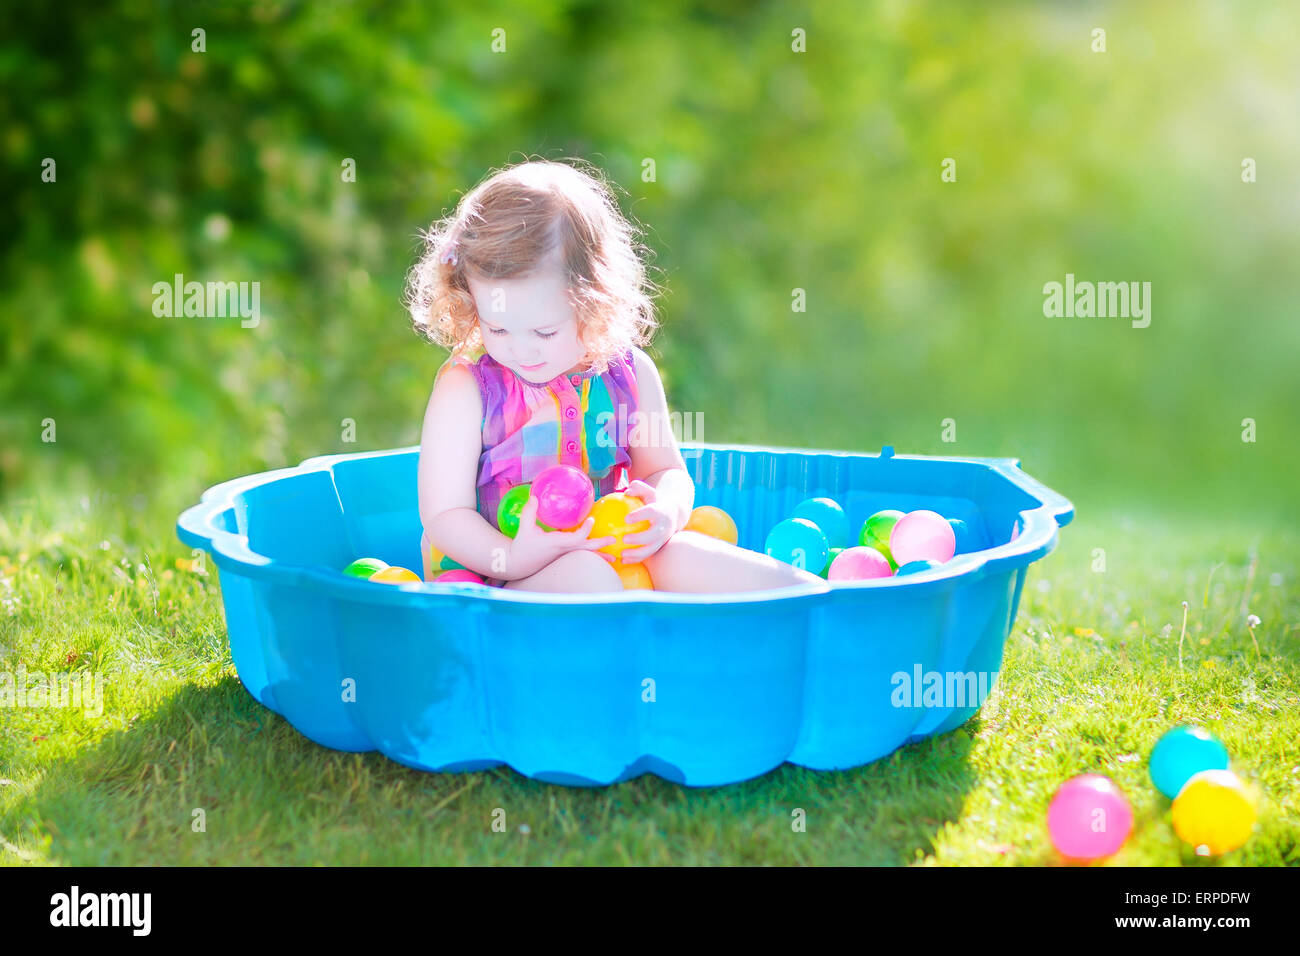 Happy cute girl avec des cheveux bouclés portant une robe colorée rose jouant dans un bac à sable avec des jouets en plastique billes dans jardin Banque D'Images